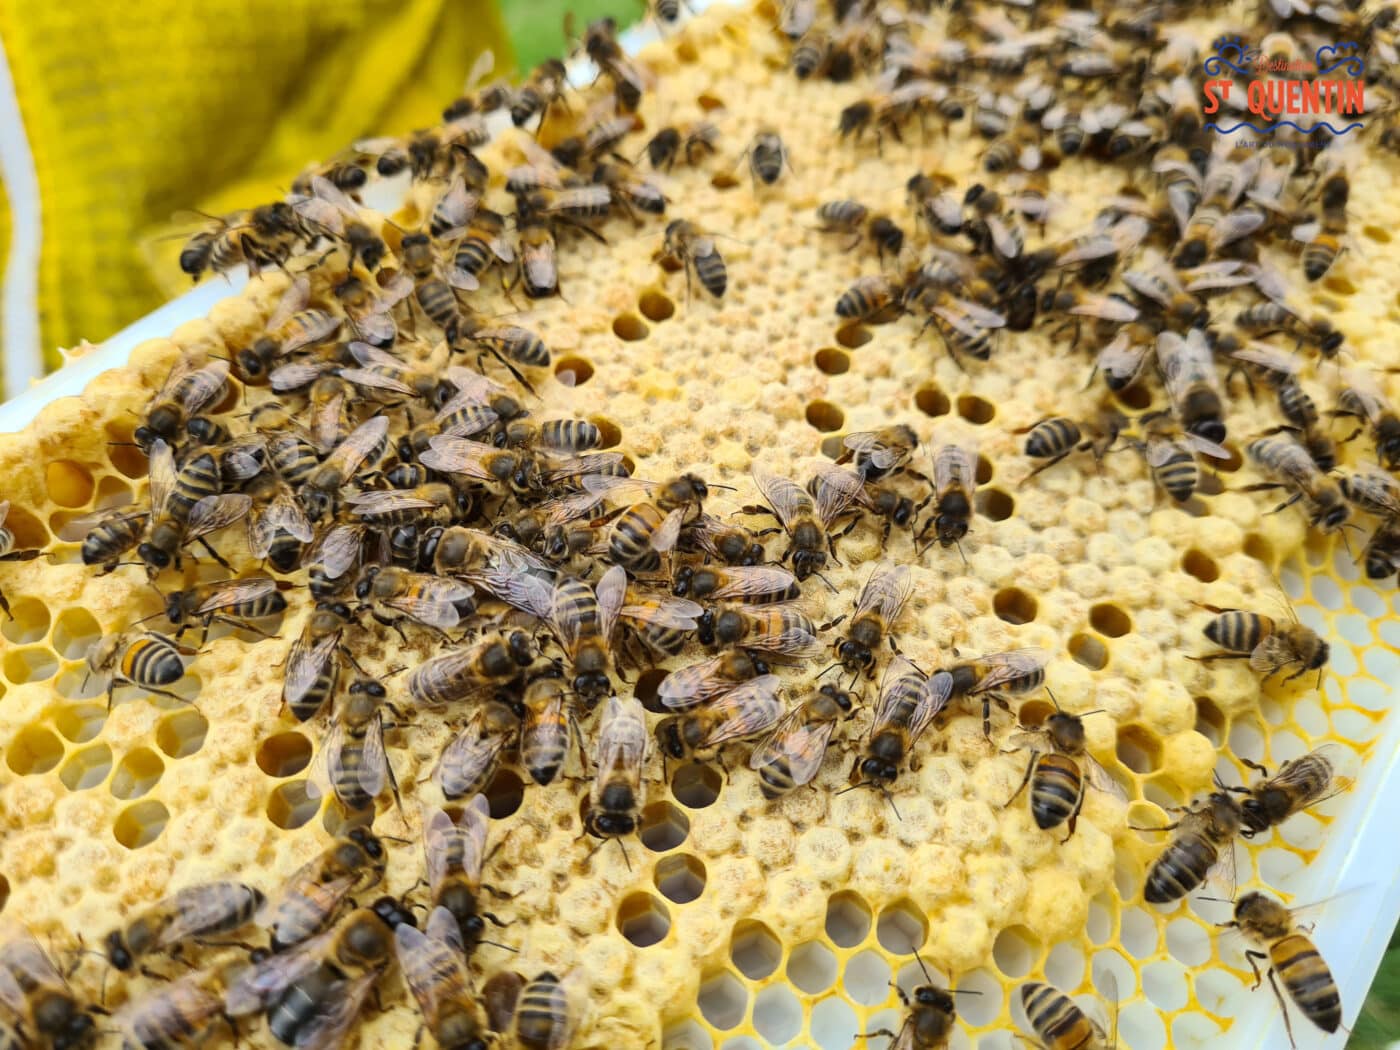 ambassadeur les abeilles de francilly 08 - Office de tourisme du Saint-Quentinois